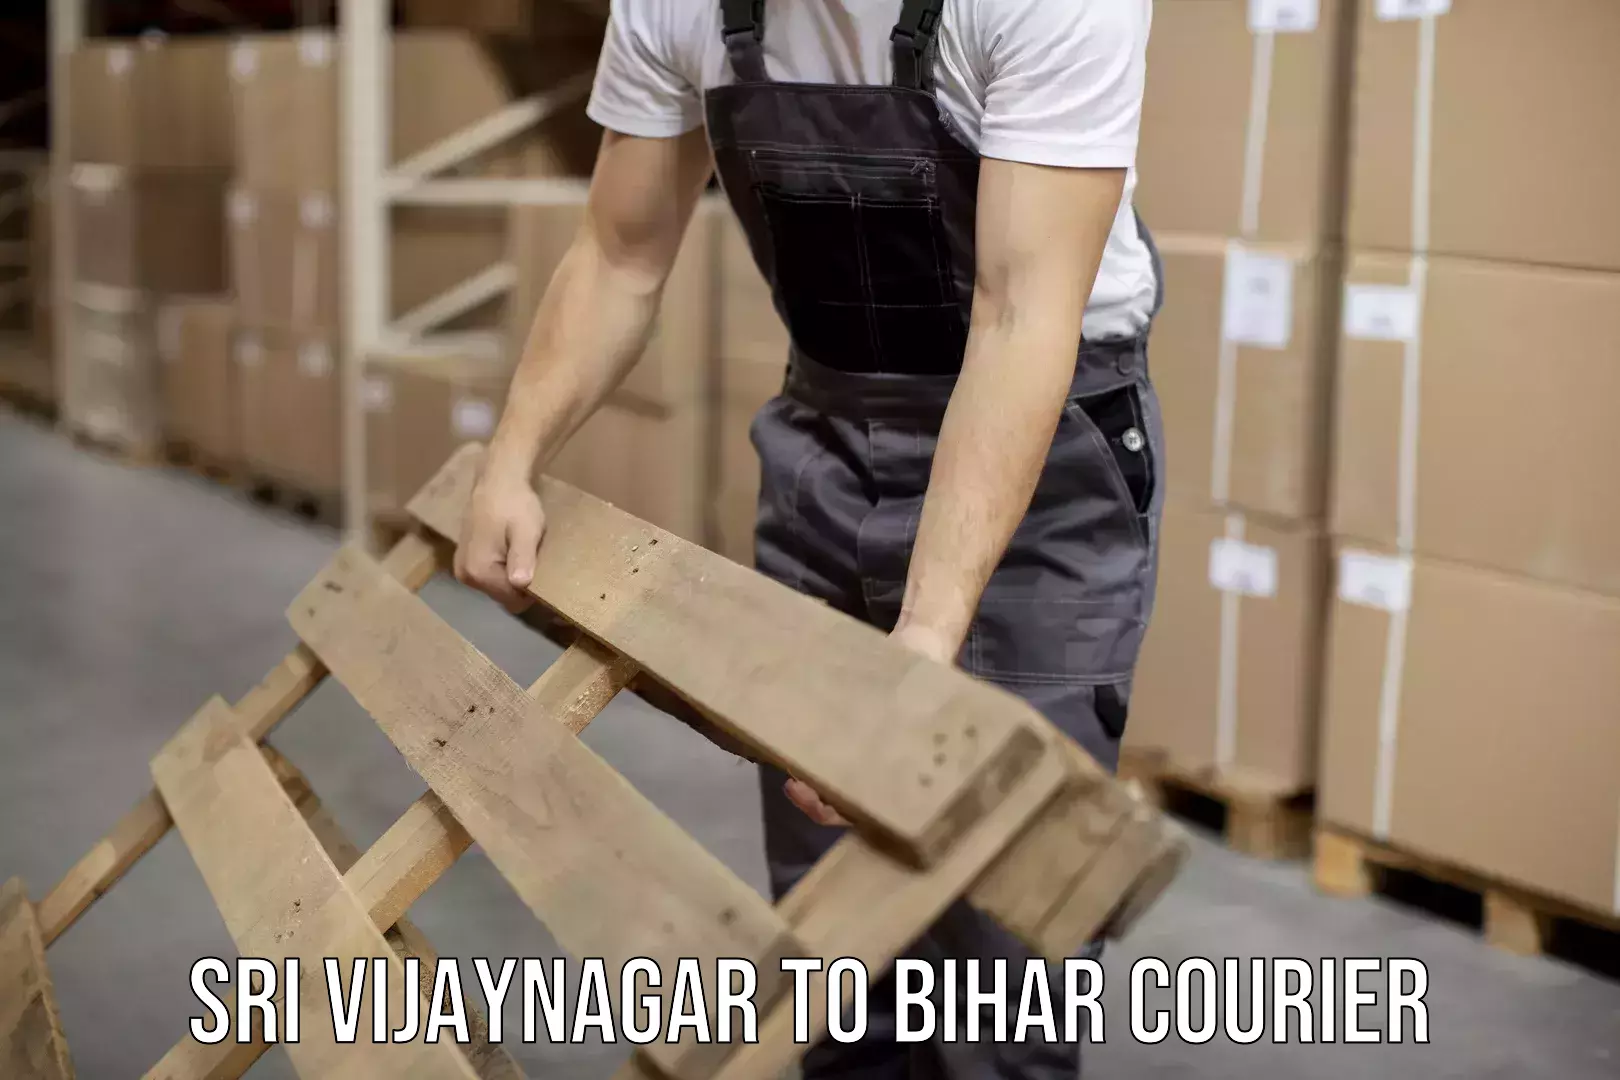 Customer-centric shipping Sri Vijaynagar to Bihar